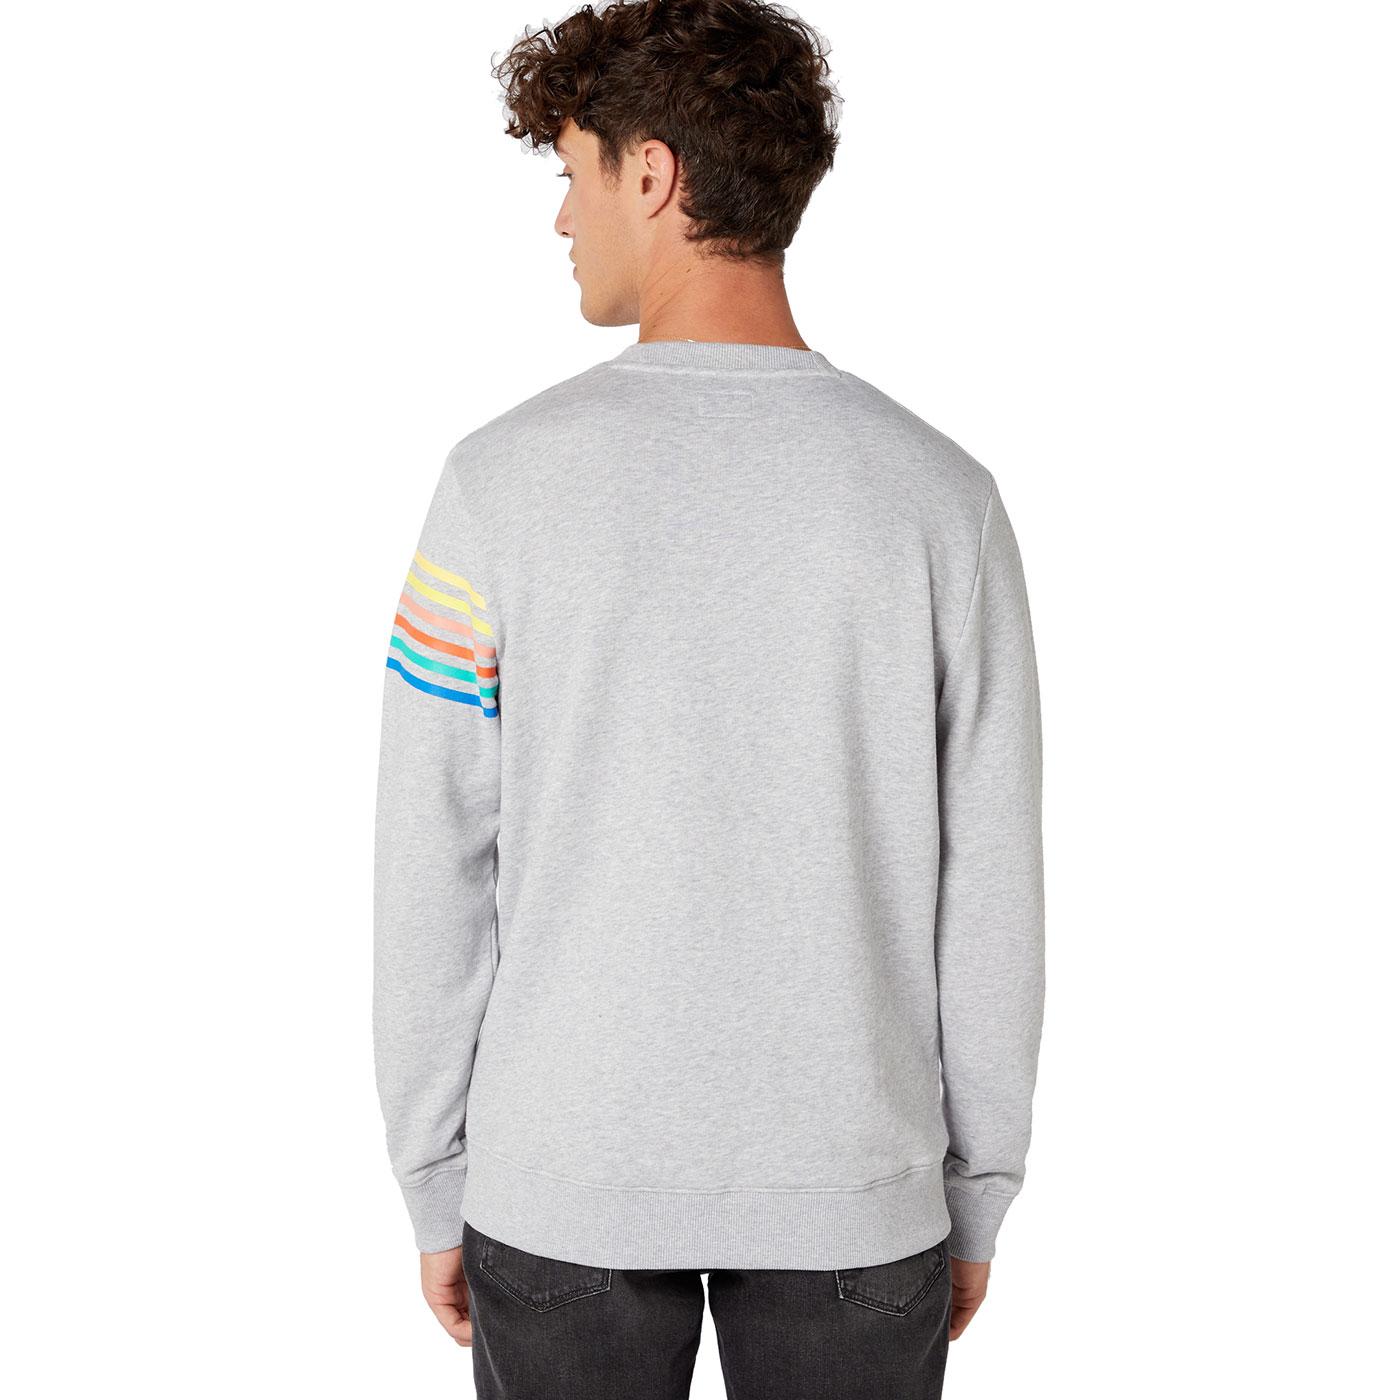 wrangler rainbow sweatshirt